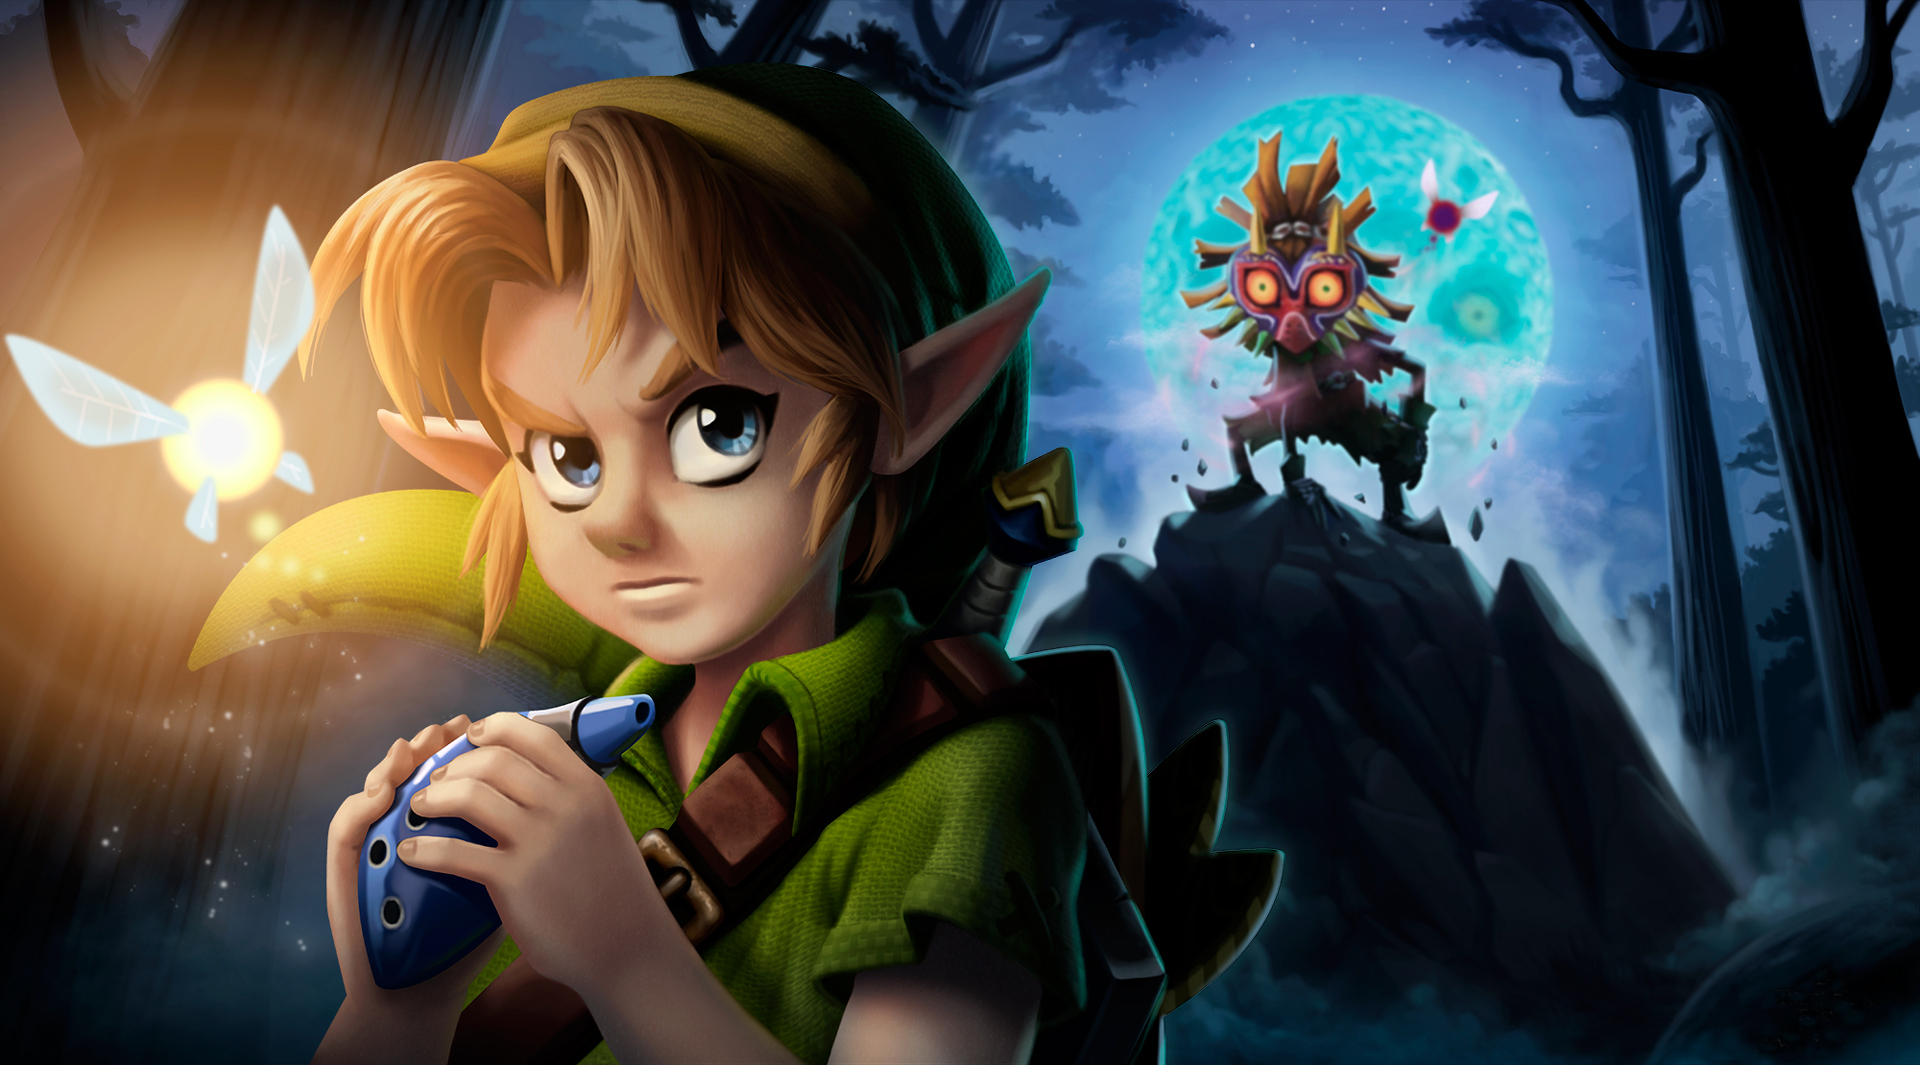 Descarga gratuita de fondo de pantalla para móvil de The Legend Of Zelda: Majora's Mask, Zelda, Videojuego.